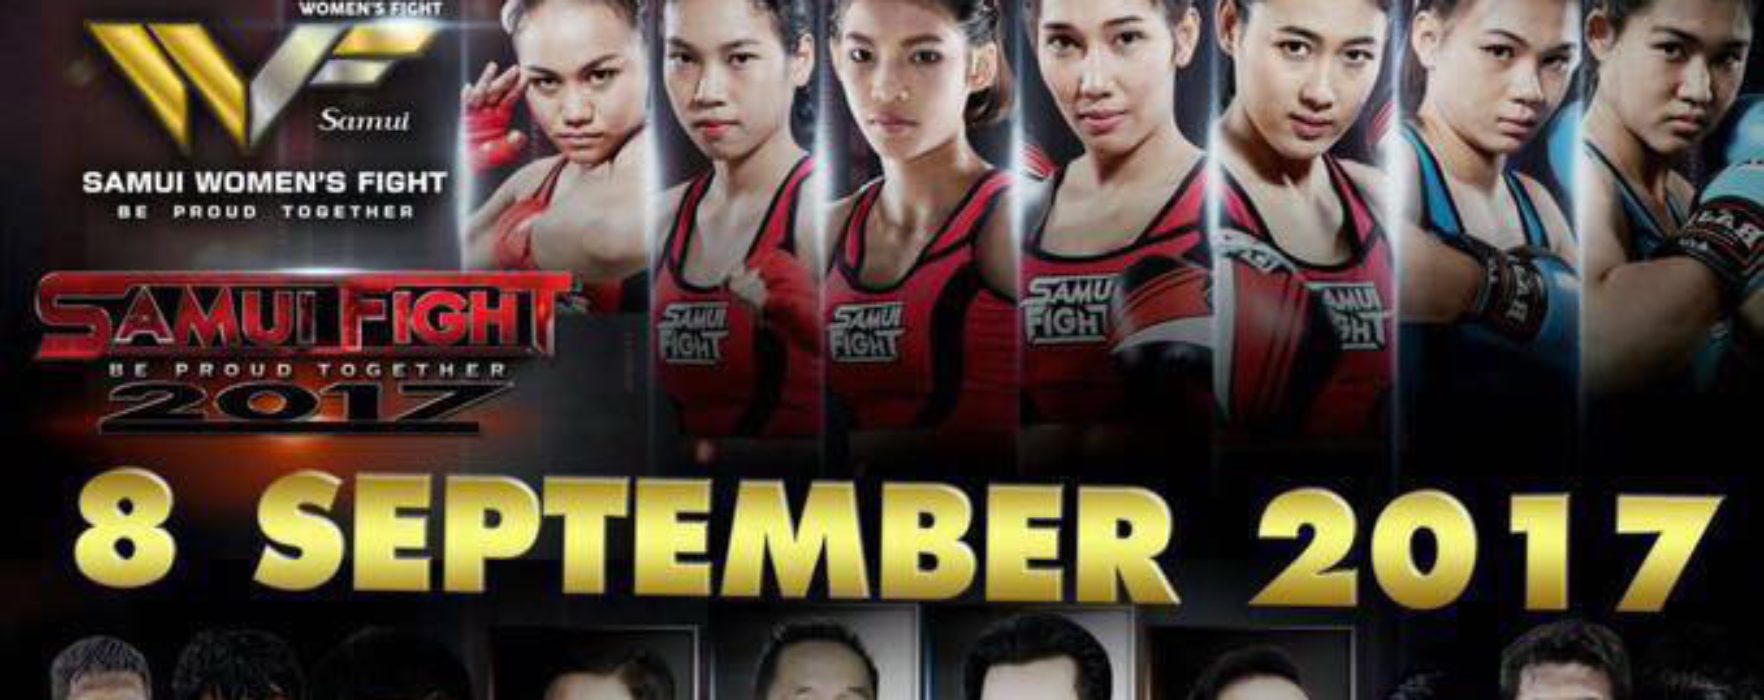 Samui fight 2017 – Saengmanee, Panpayak, Seksan, Chomanee e molti altri – 7-10 sett 2017